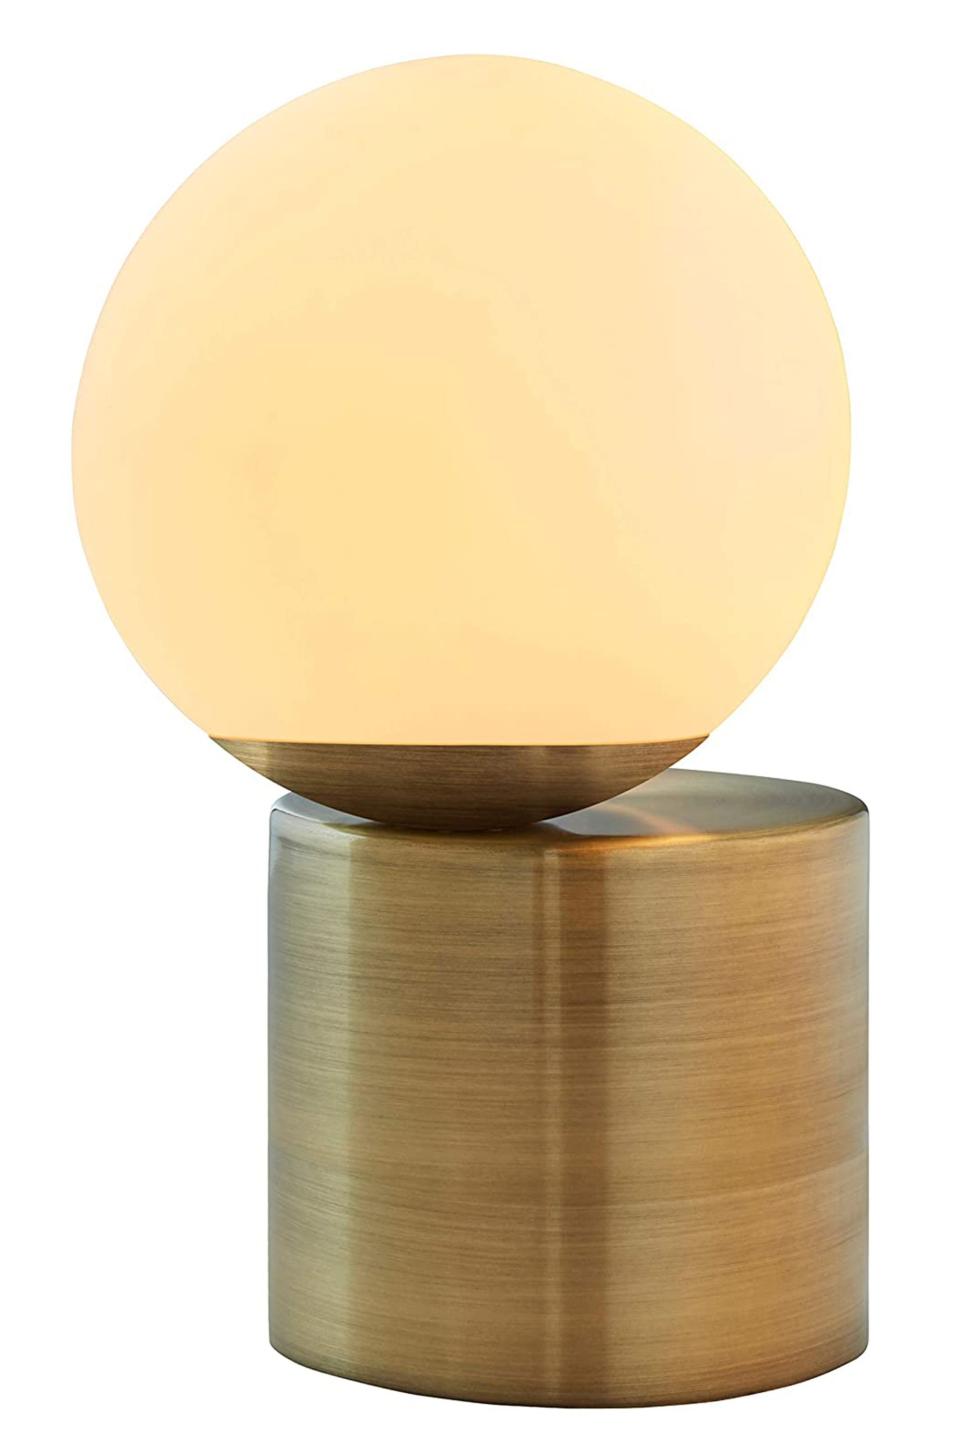 45) Rivet Modern Glass Globe Table Desk Lamp